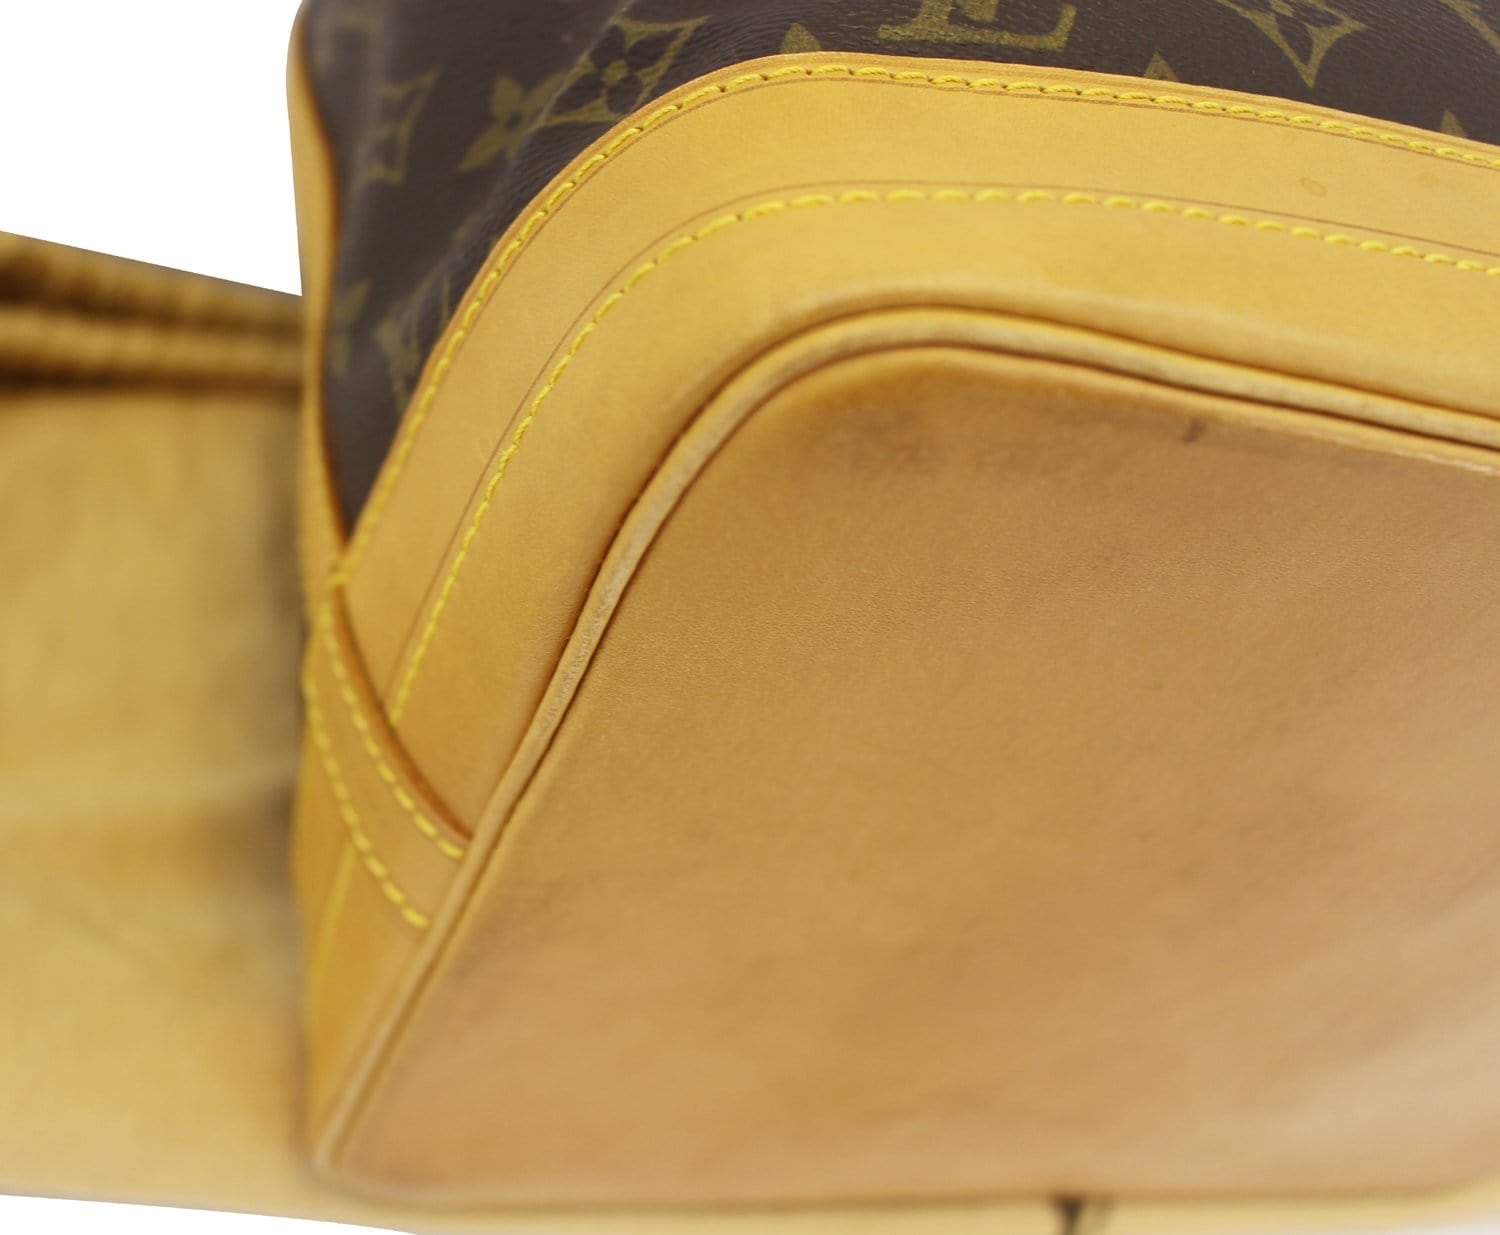 Auth LOUIS VUITTON Louis Vuitton Nomad Noe Tea Shoulder Bag Leather